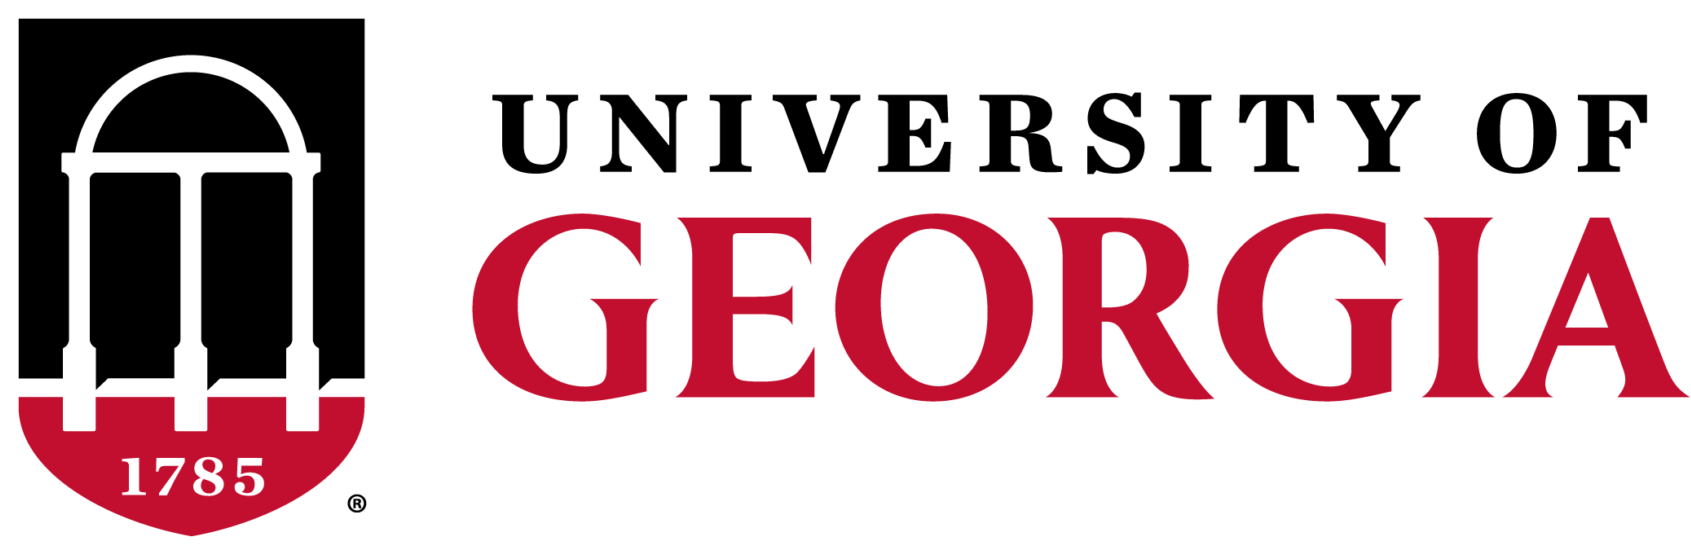 UGA logo-2